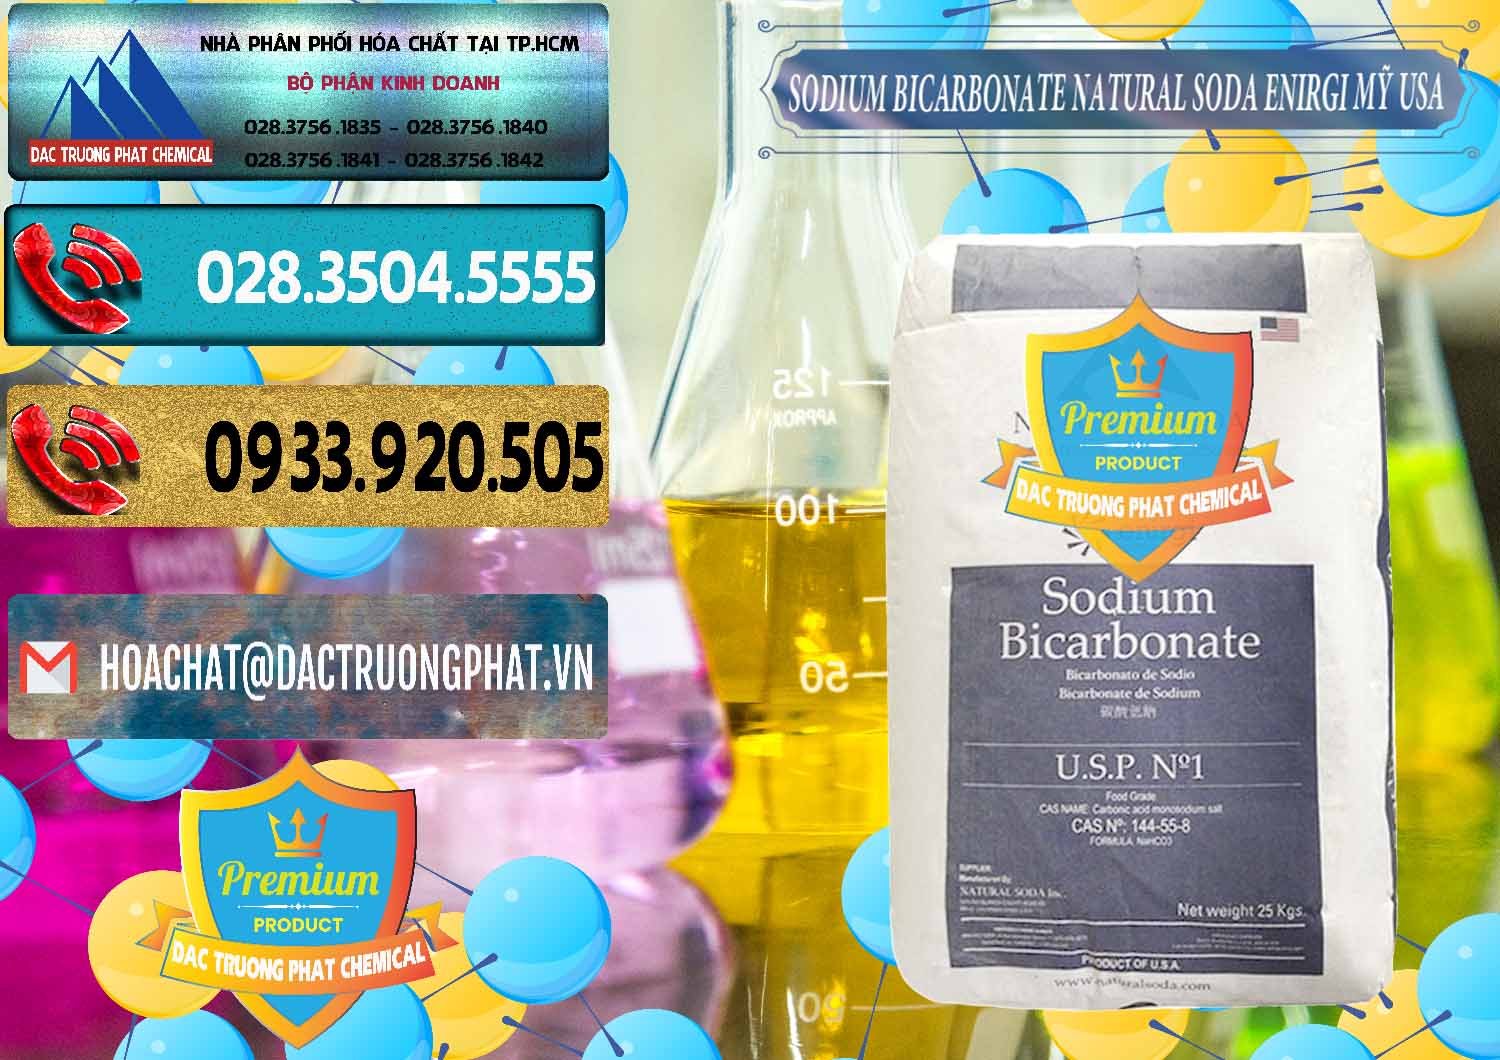 Đơn vị kinh doanh và bán Sodium Bicarbonate – Bicar NaHCO3 Food Grade Natural Soda Enirgi Mỹ USA - 0257 - Cty nhập khẩu - cung cấp hóa chất tại TP.HCM - hoachatdetnhuom.com